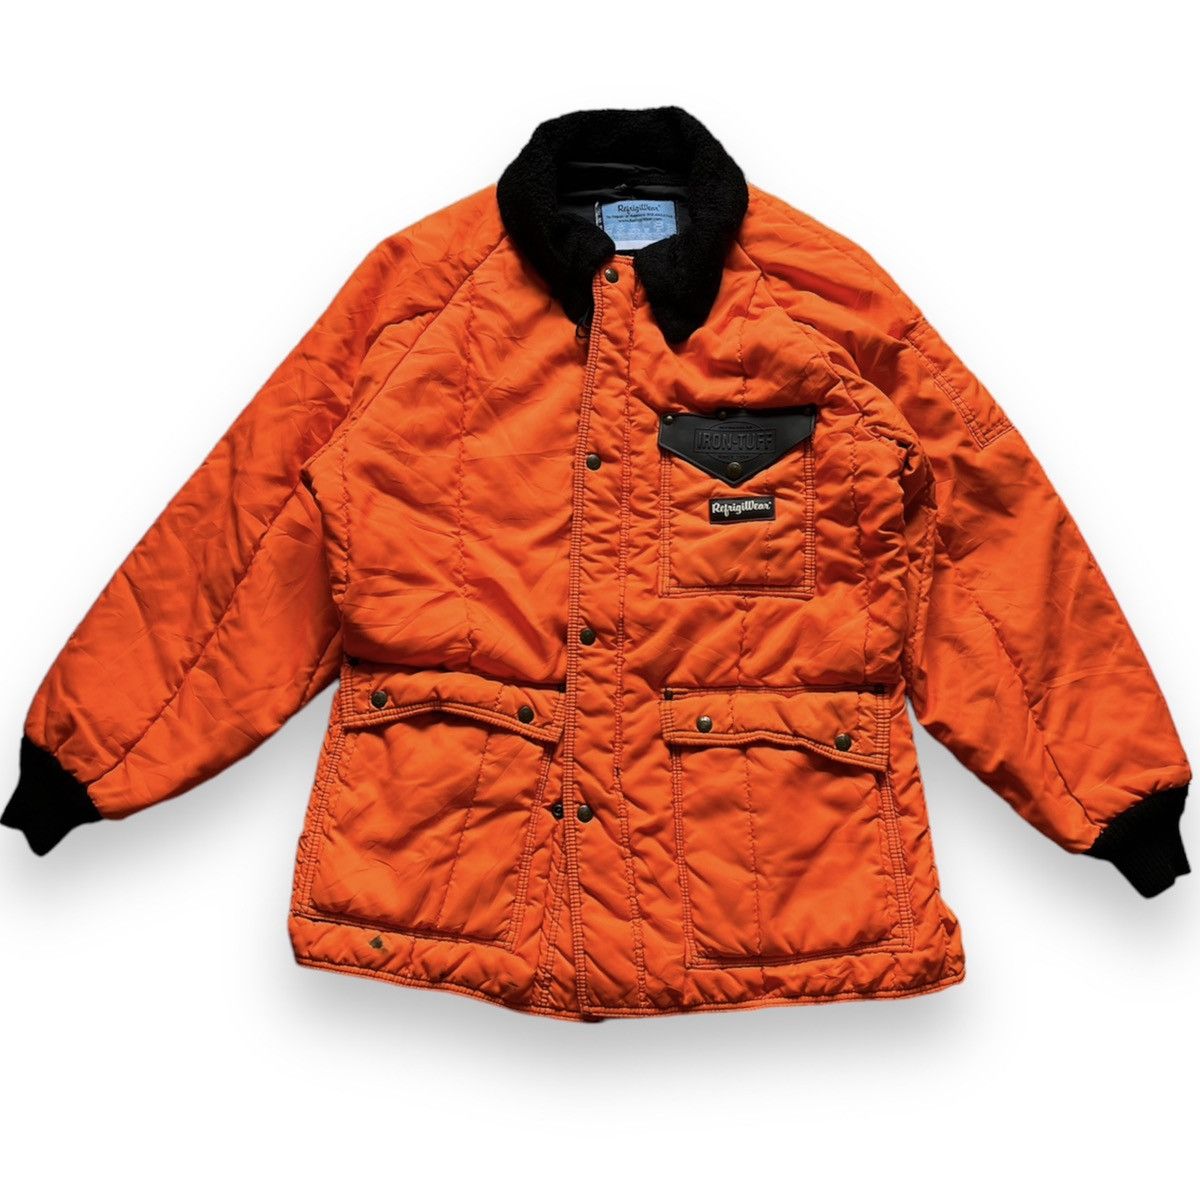 Refrigewear - Refrigiwear Winter Iron Tuff Puffer Jacket - 19